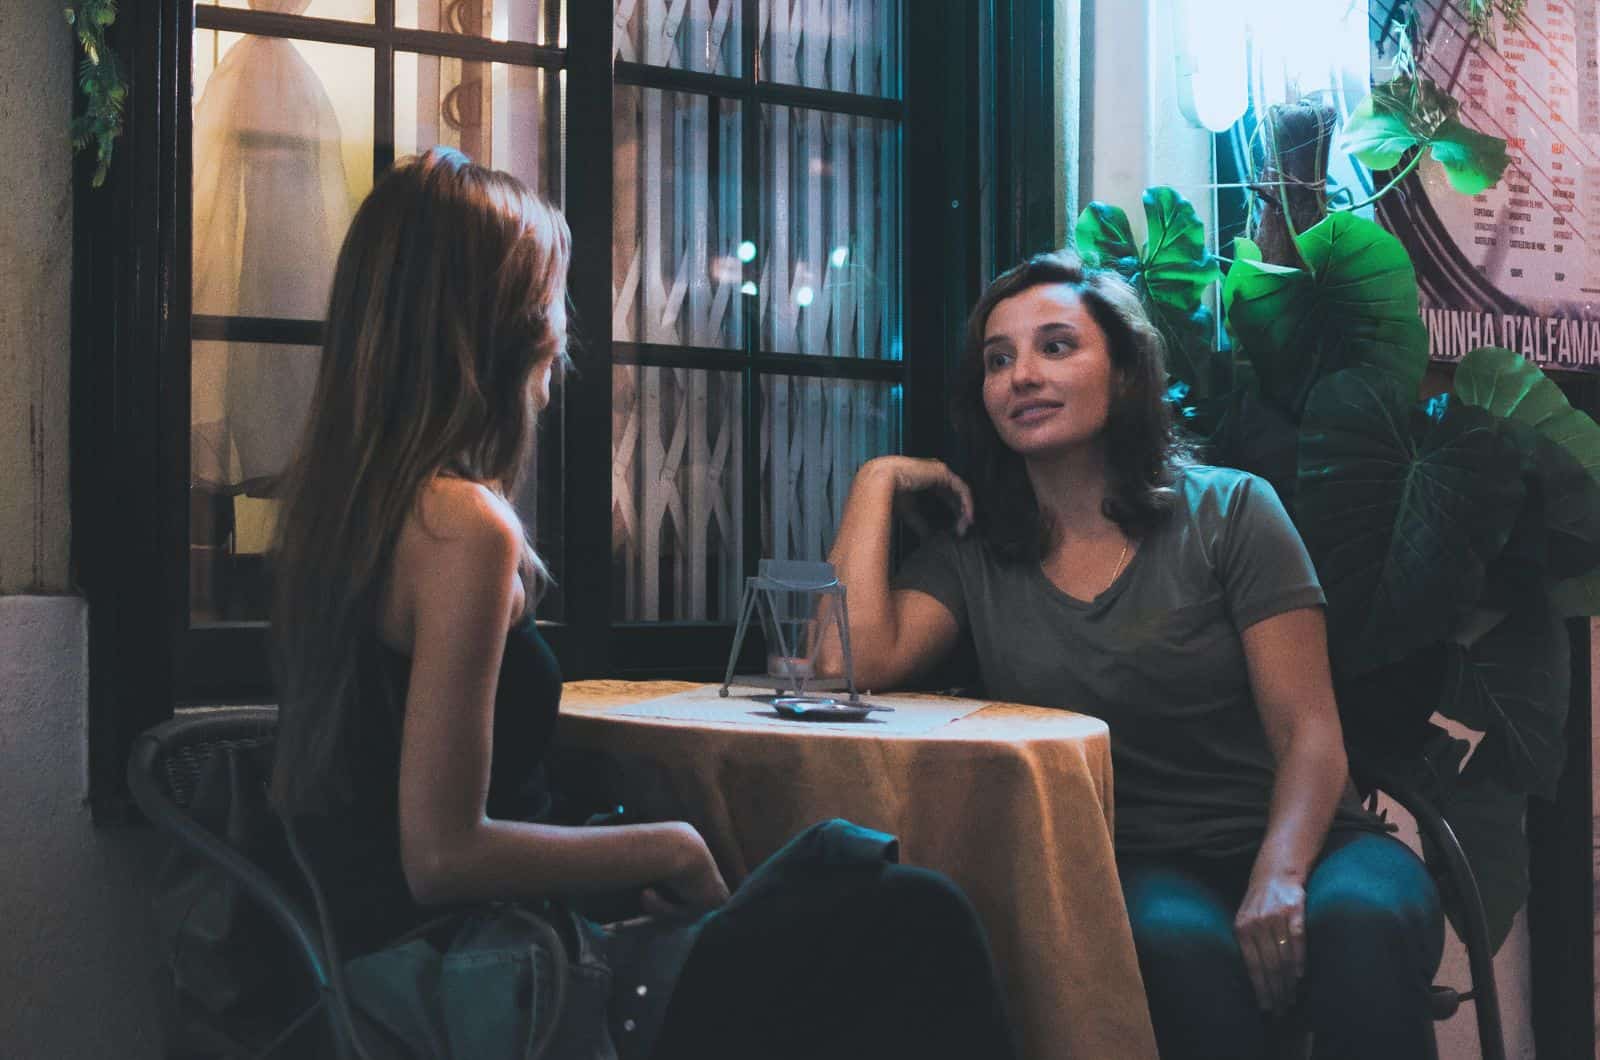 zwei Frauen sprechen im Café am Tisch sitzen